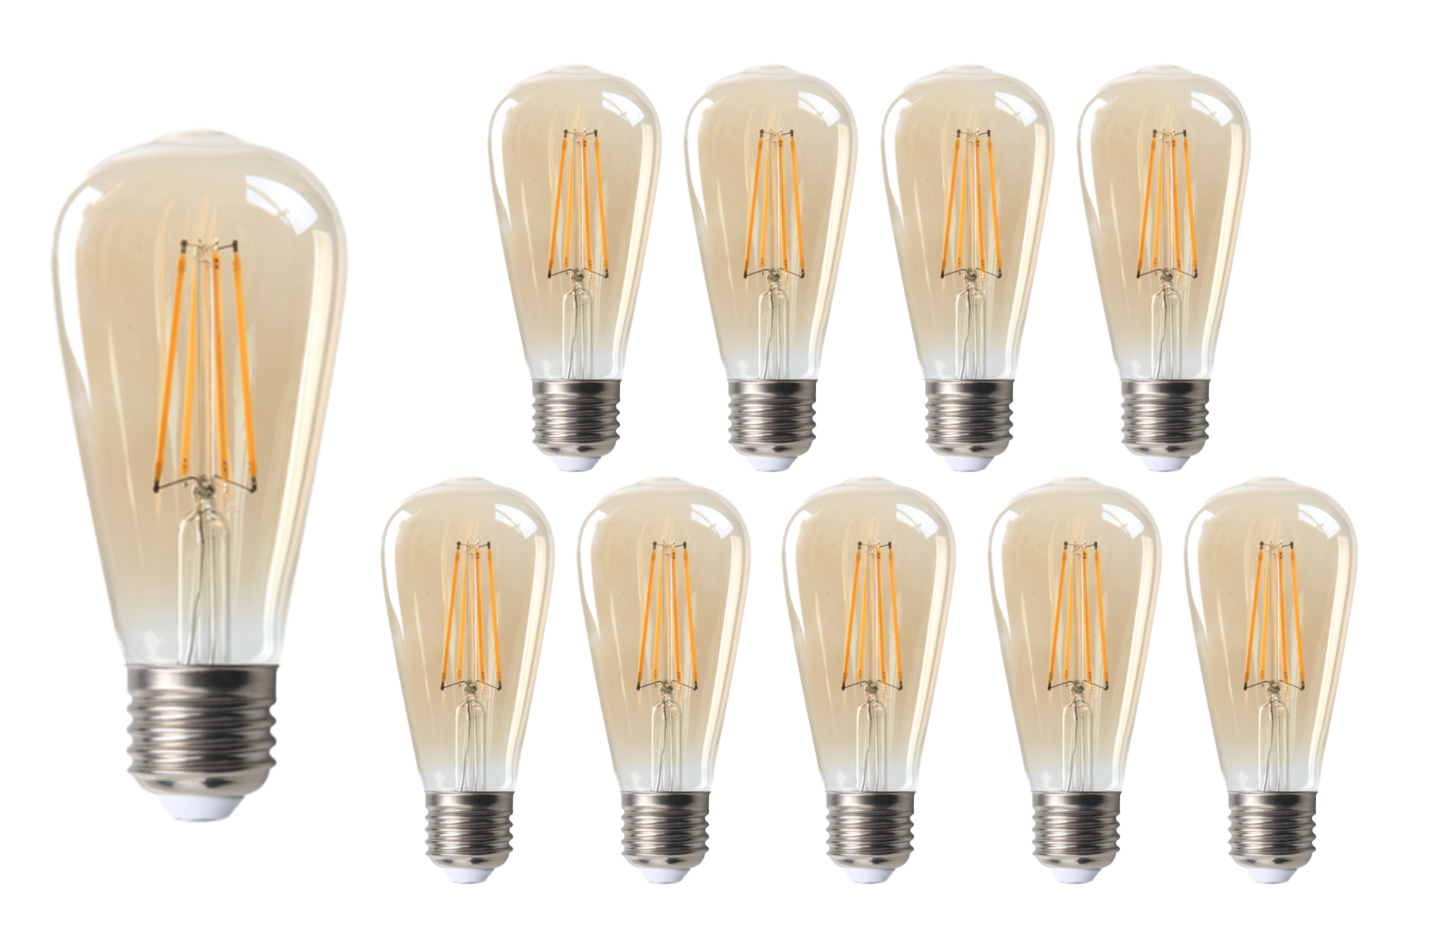 haag Vergissing Wedstrijd Voordeelpak 10 stuks LED Lamp E27 fitting - 2200K - 4W vervangt 40W -  Ledpanelendiscounter.nl